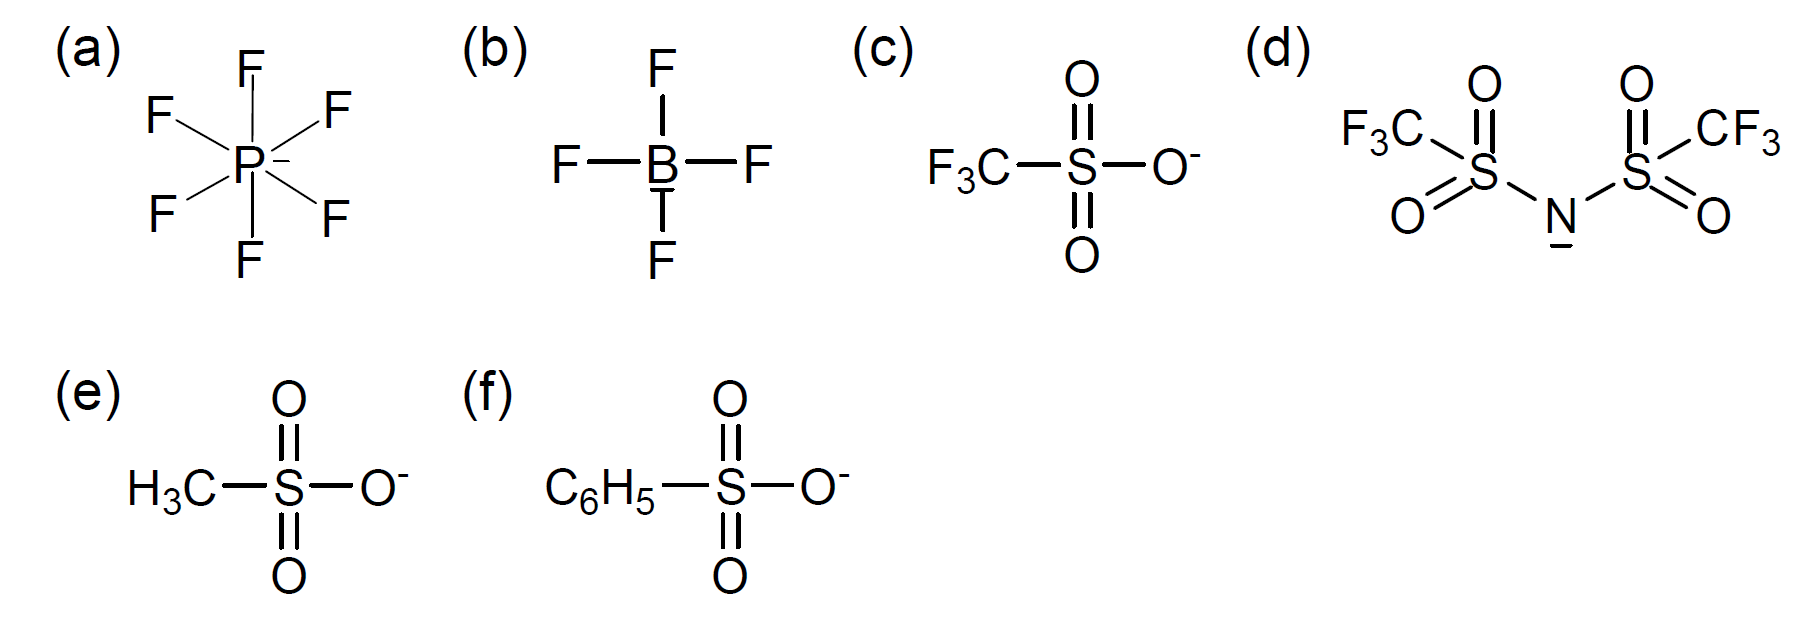 Non-stoichiometric 이온성 액체의 합성을 위해 사용한 다양한 음이온의 화학 구조; (a) PF6, (b) BF4, (c) CF3SO3-, (d) TFSI, (e) CH3SO3-, (f) C6H5SO3-